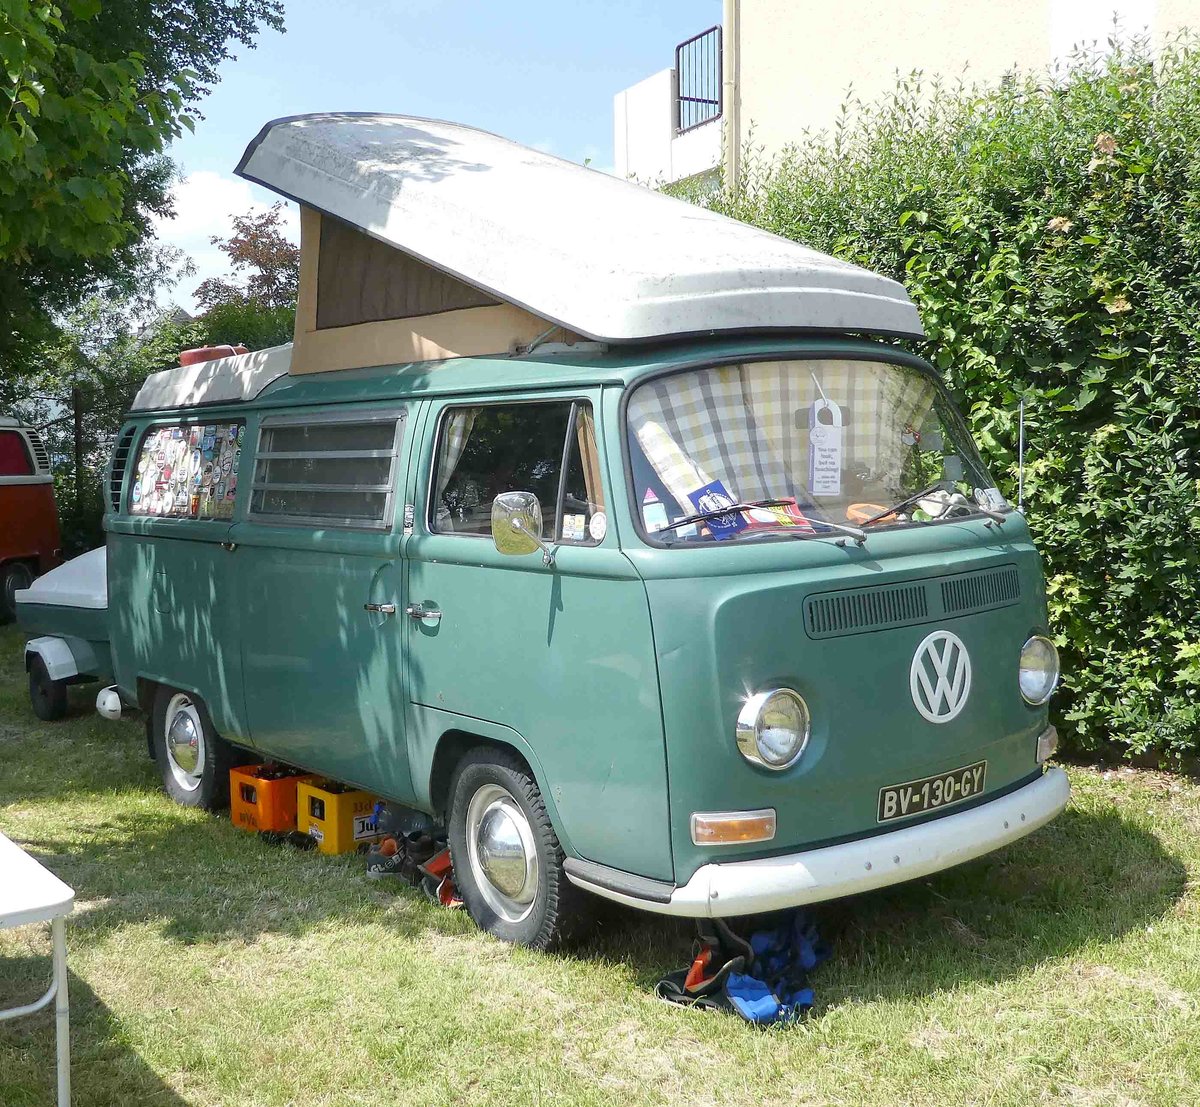 =VW T2 Wohnmobil steht auf dem Ausstellungsgelände in Bad Camberg anl. LOTTERMANN-Bullitreffen im Juni 2019